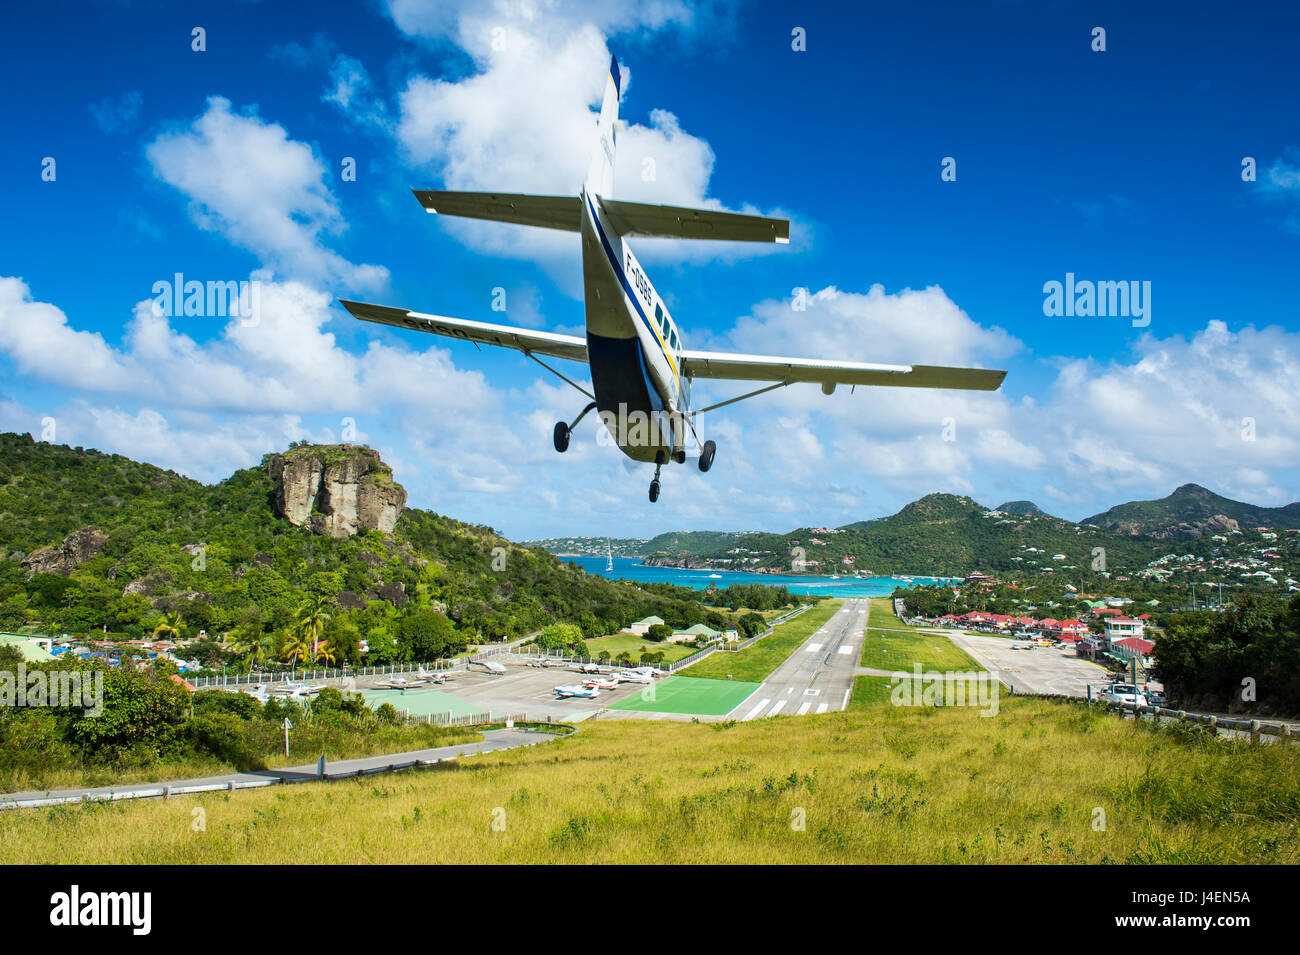 Kleines Flugzeug Landung auf dem Flughafen von St. Barth (Saint Barthelemy), kleine Antillen, West Indies, Karibik, Mittelamerika Stockfoto